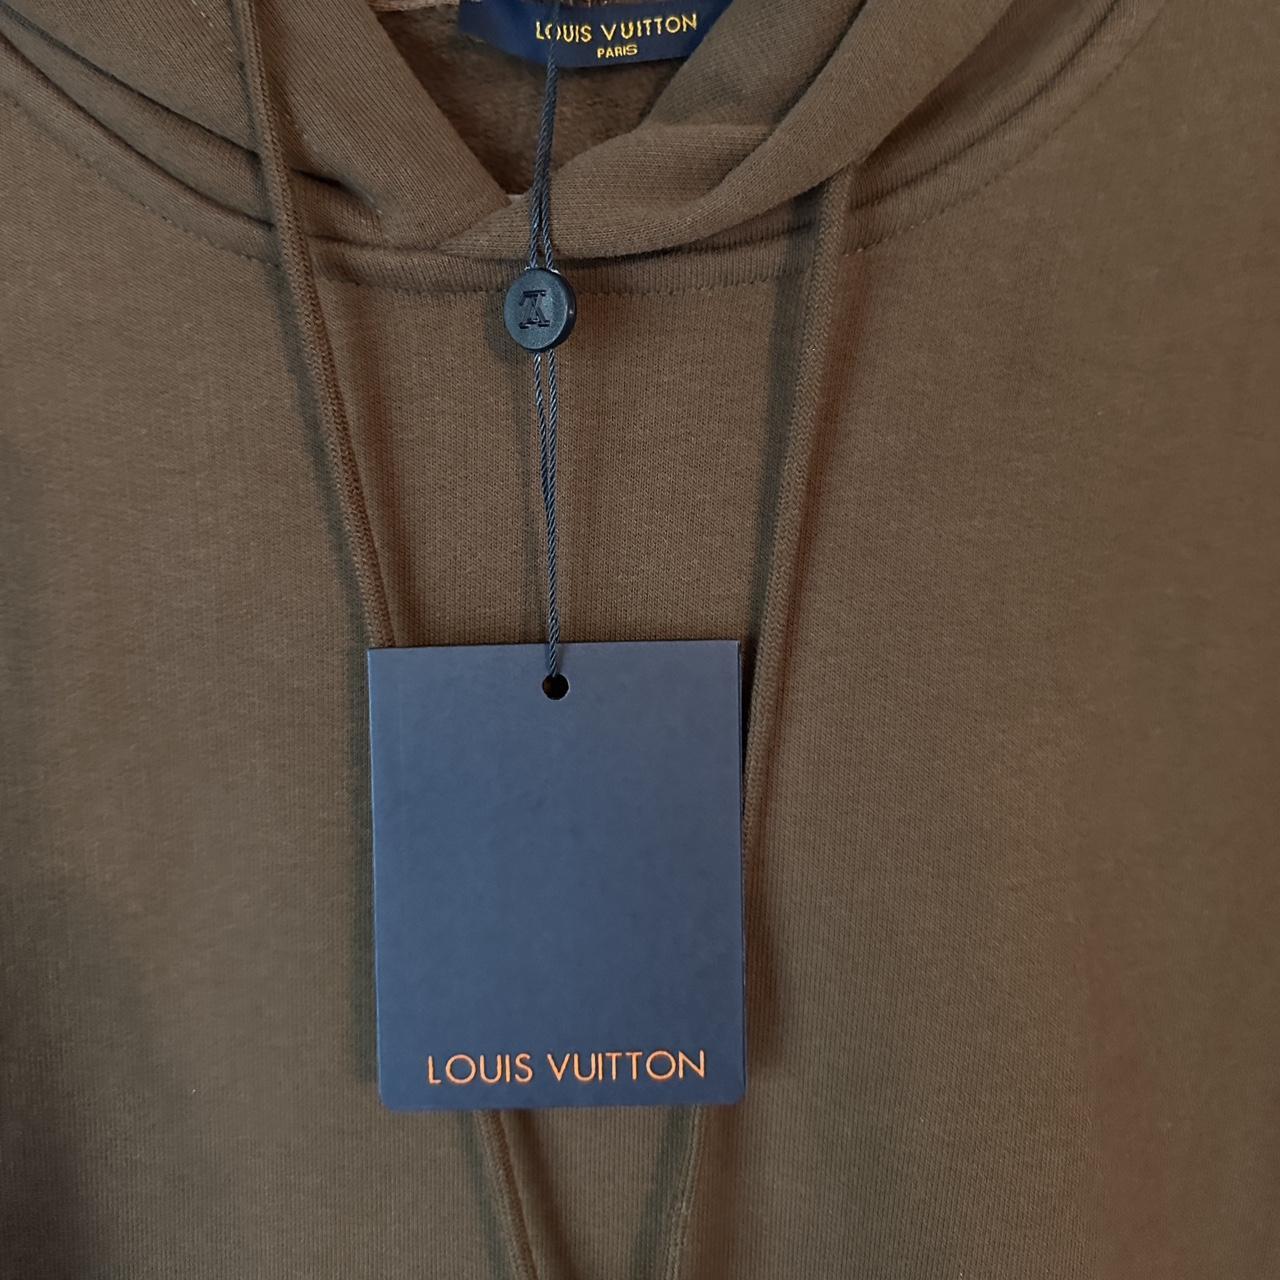 Louis vuitton-hoodie - Depop